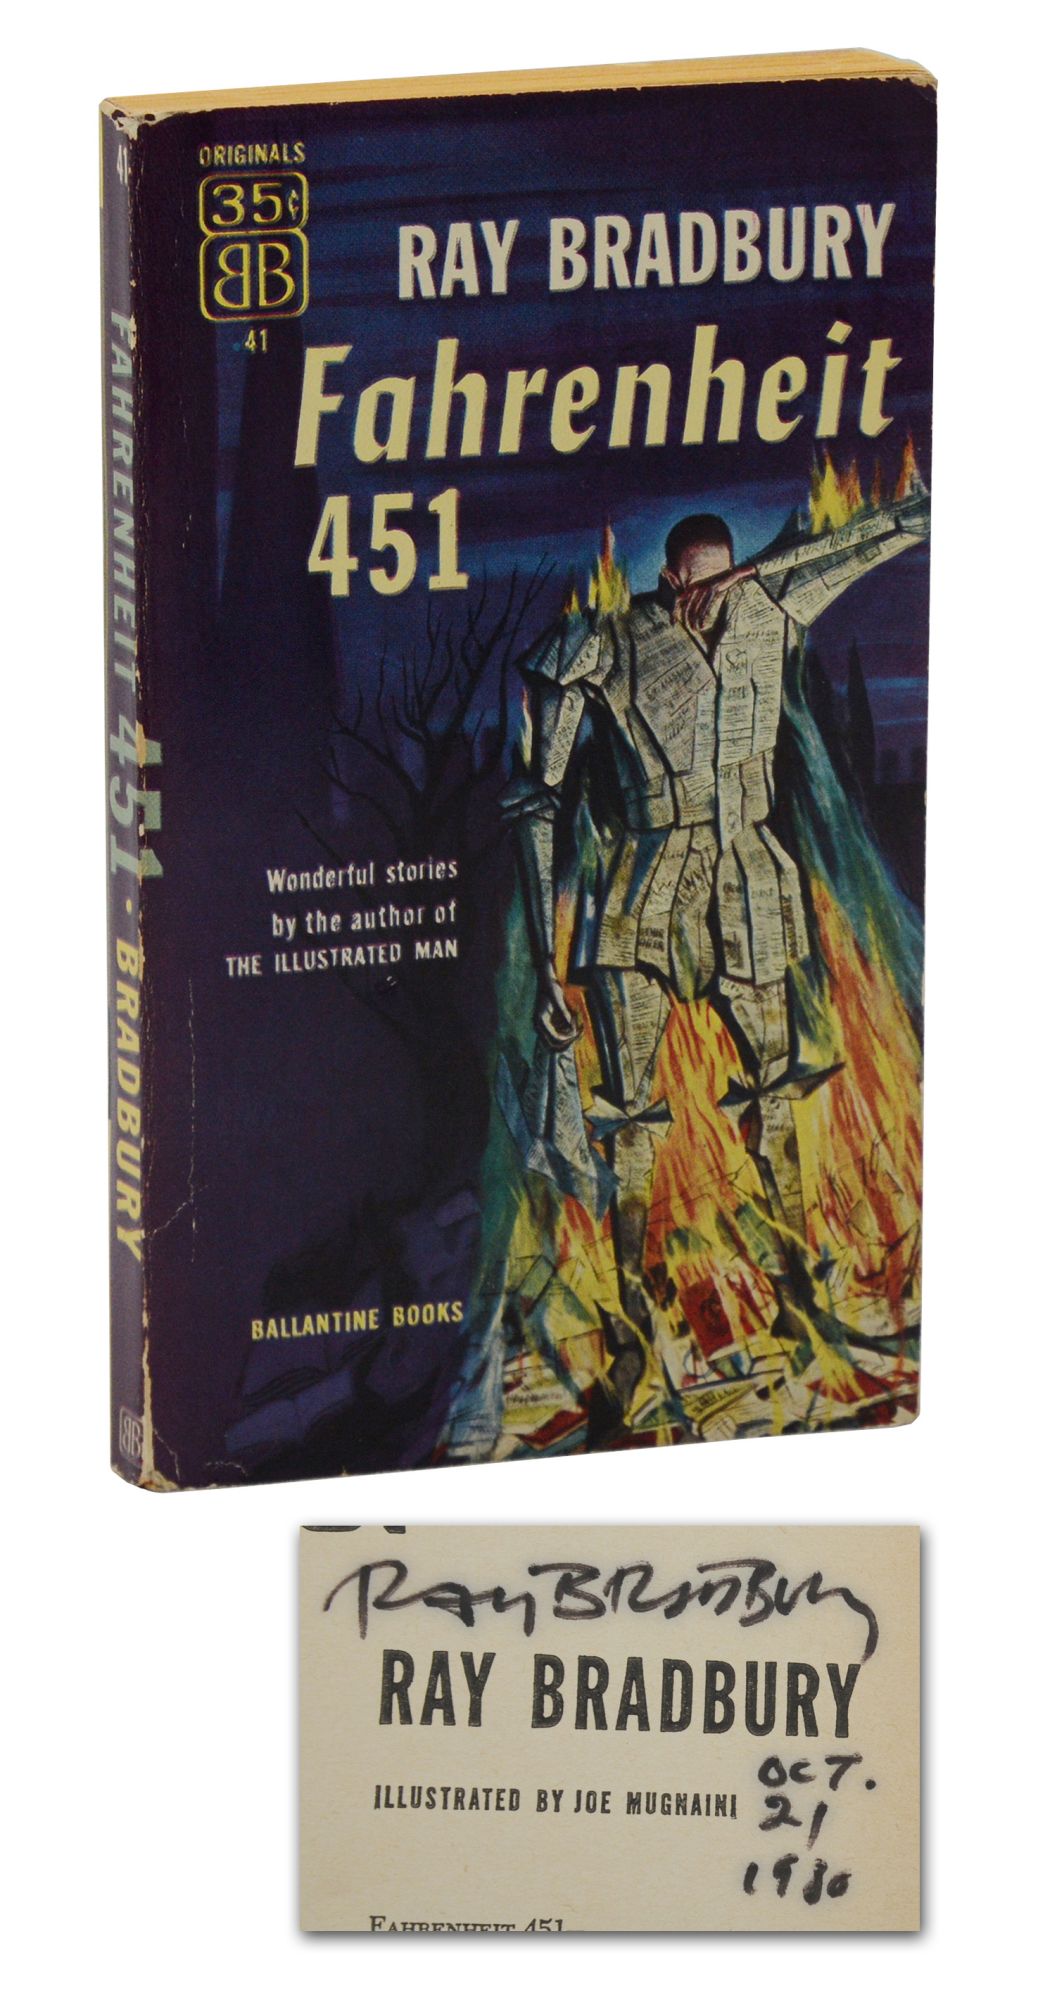 Fahrenheit 451 (Reprint) (Paperback) by Ray Bradbury